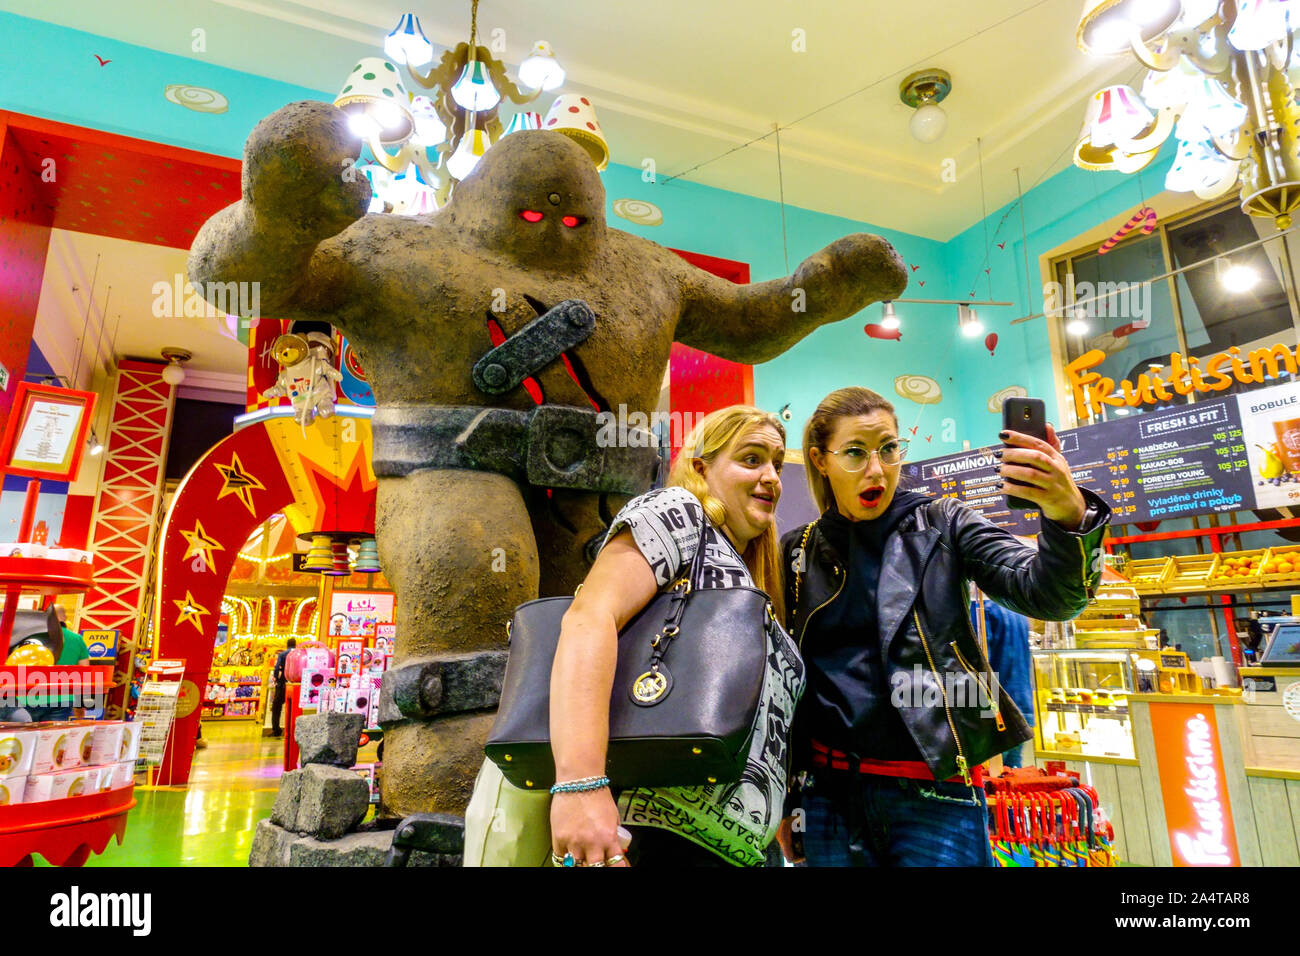 Les femmes prenant le Golem de Prague Prague selfies Hamley's toy shop, magasin à l'intérieur de République Tchèque Banque D'Images